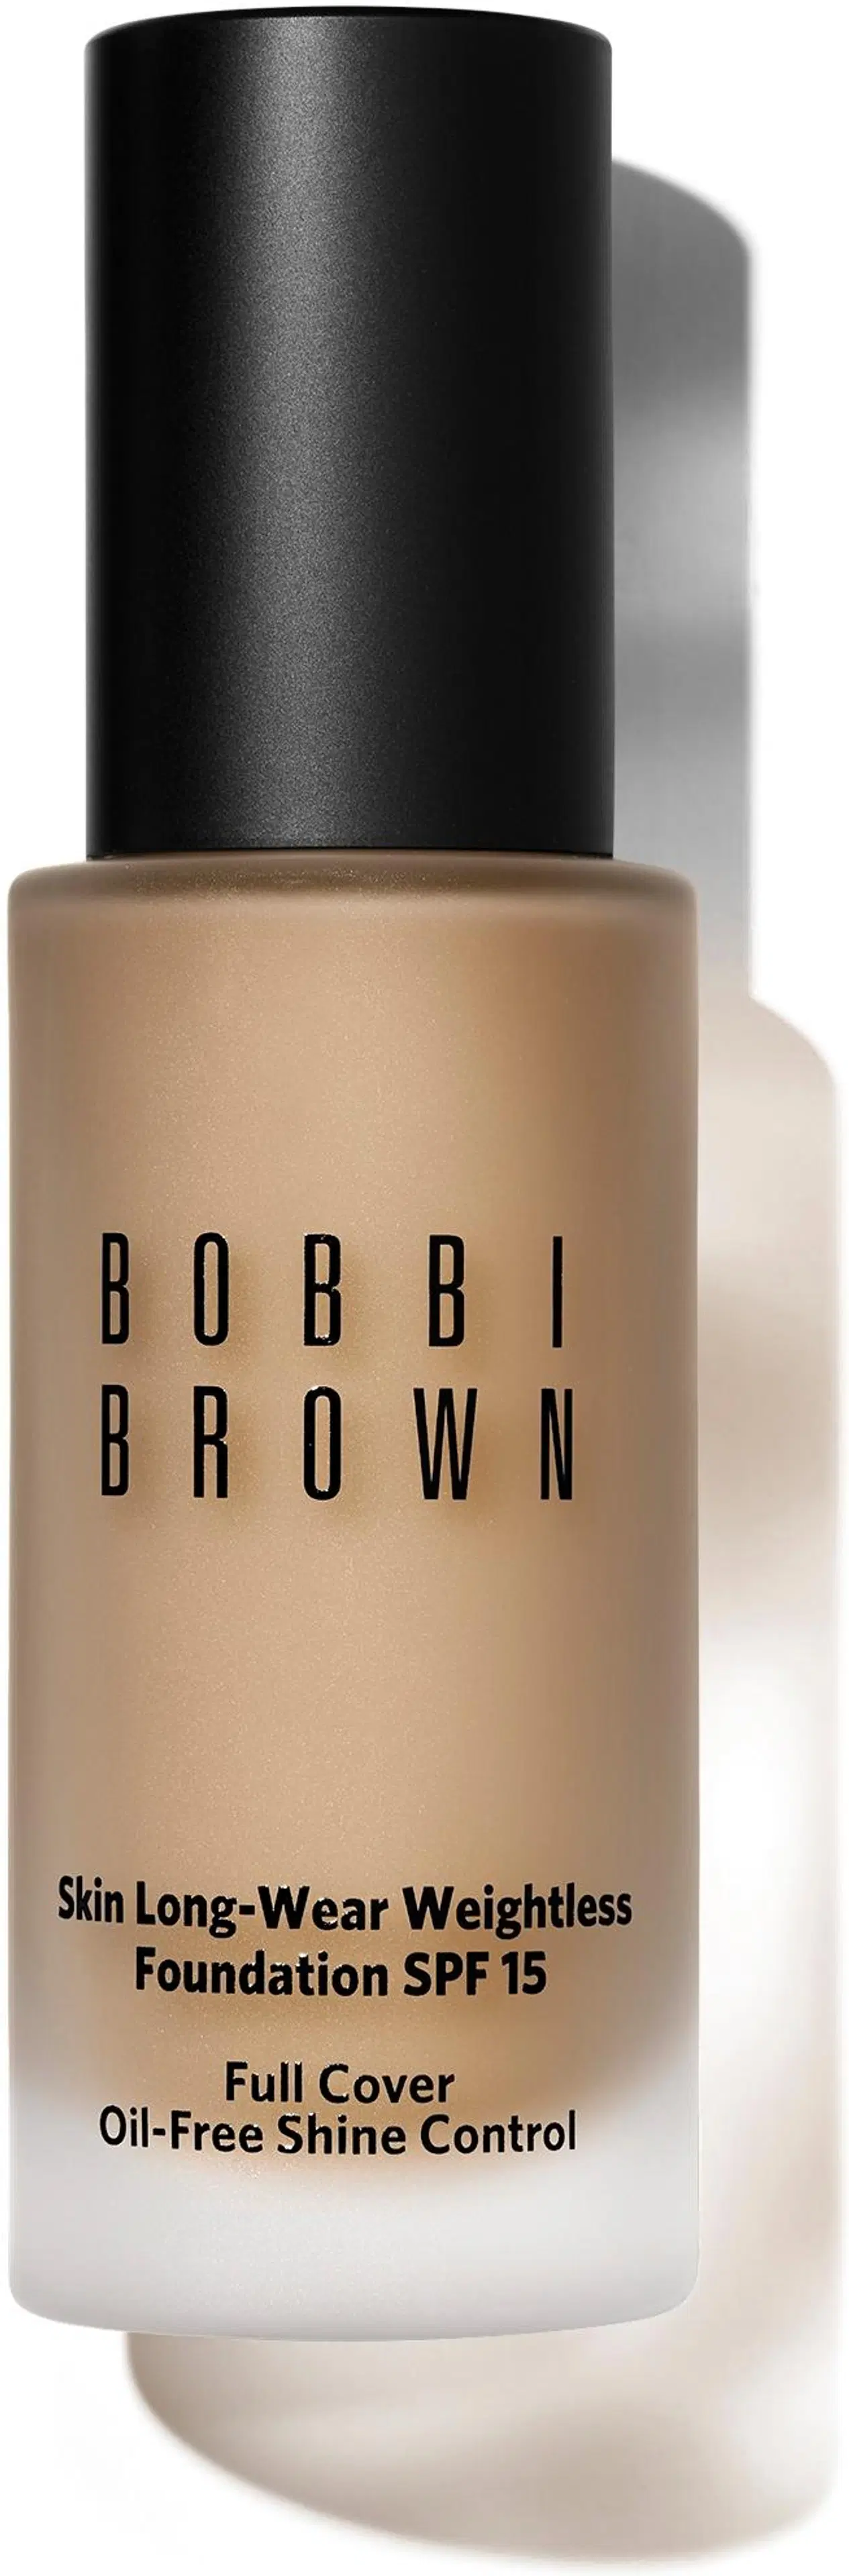 Bobbi Brown Skin Long-Wear Weightless Foundation meikkivoide 30 ml